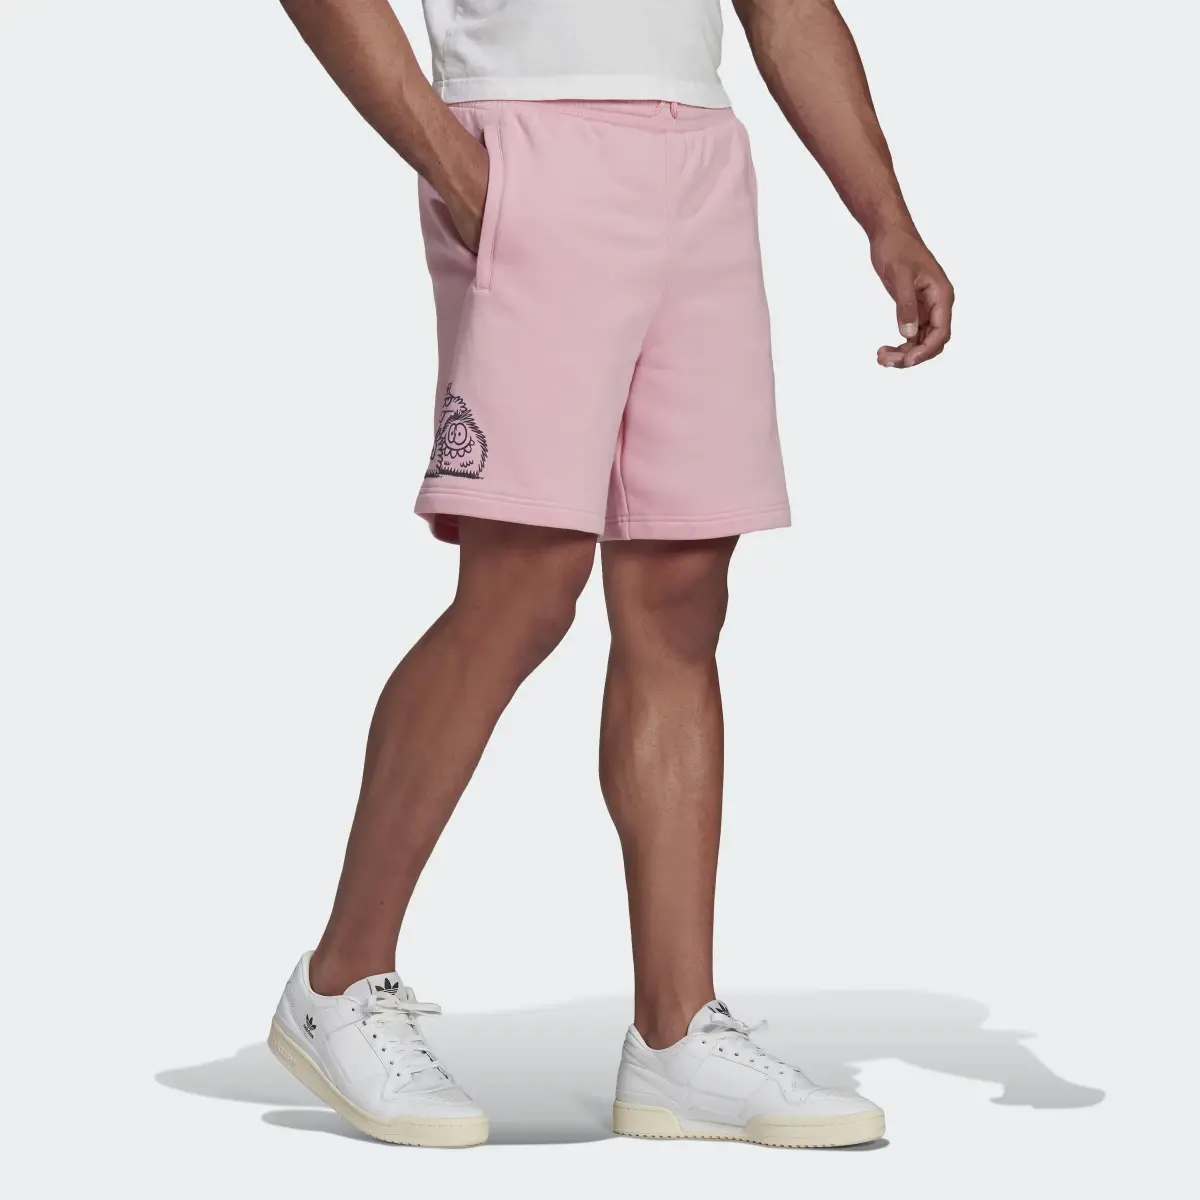 Adidas Originals x Kevin Lyons Shorts. 3